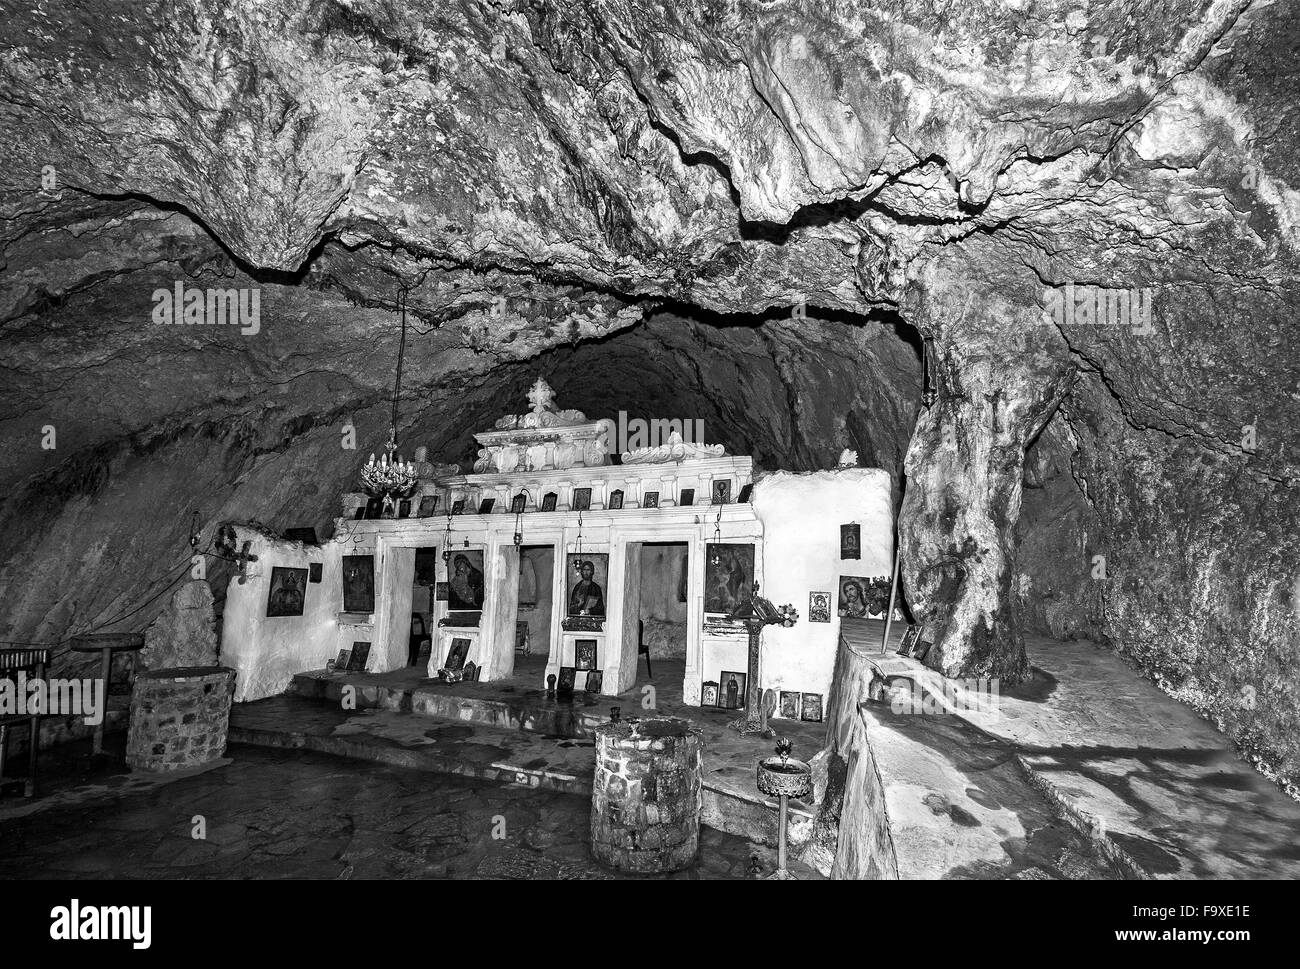 Monastère de Zoodochos Pigi construit dans une caverne sur la montagne pentes rocheuses de Giona, près de Delphes, Grèce Centrale Région Fokida Banque D'Images